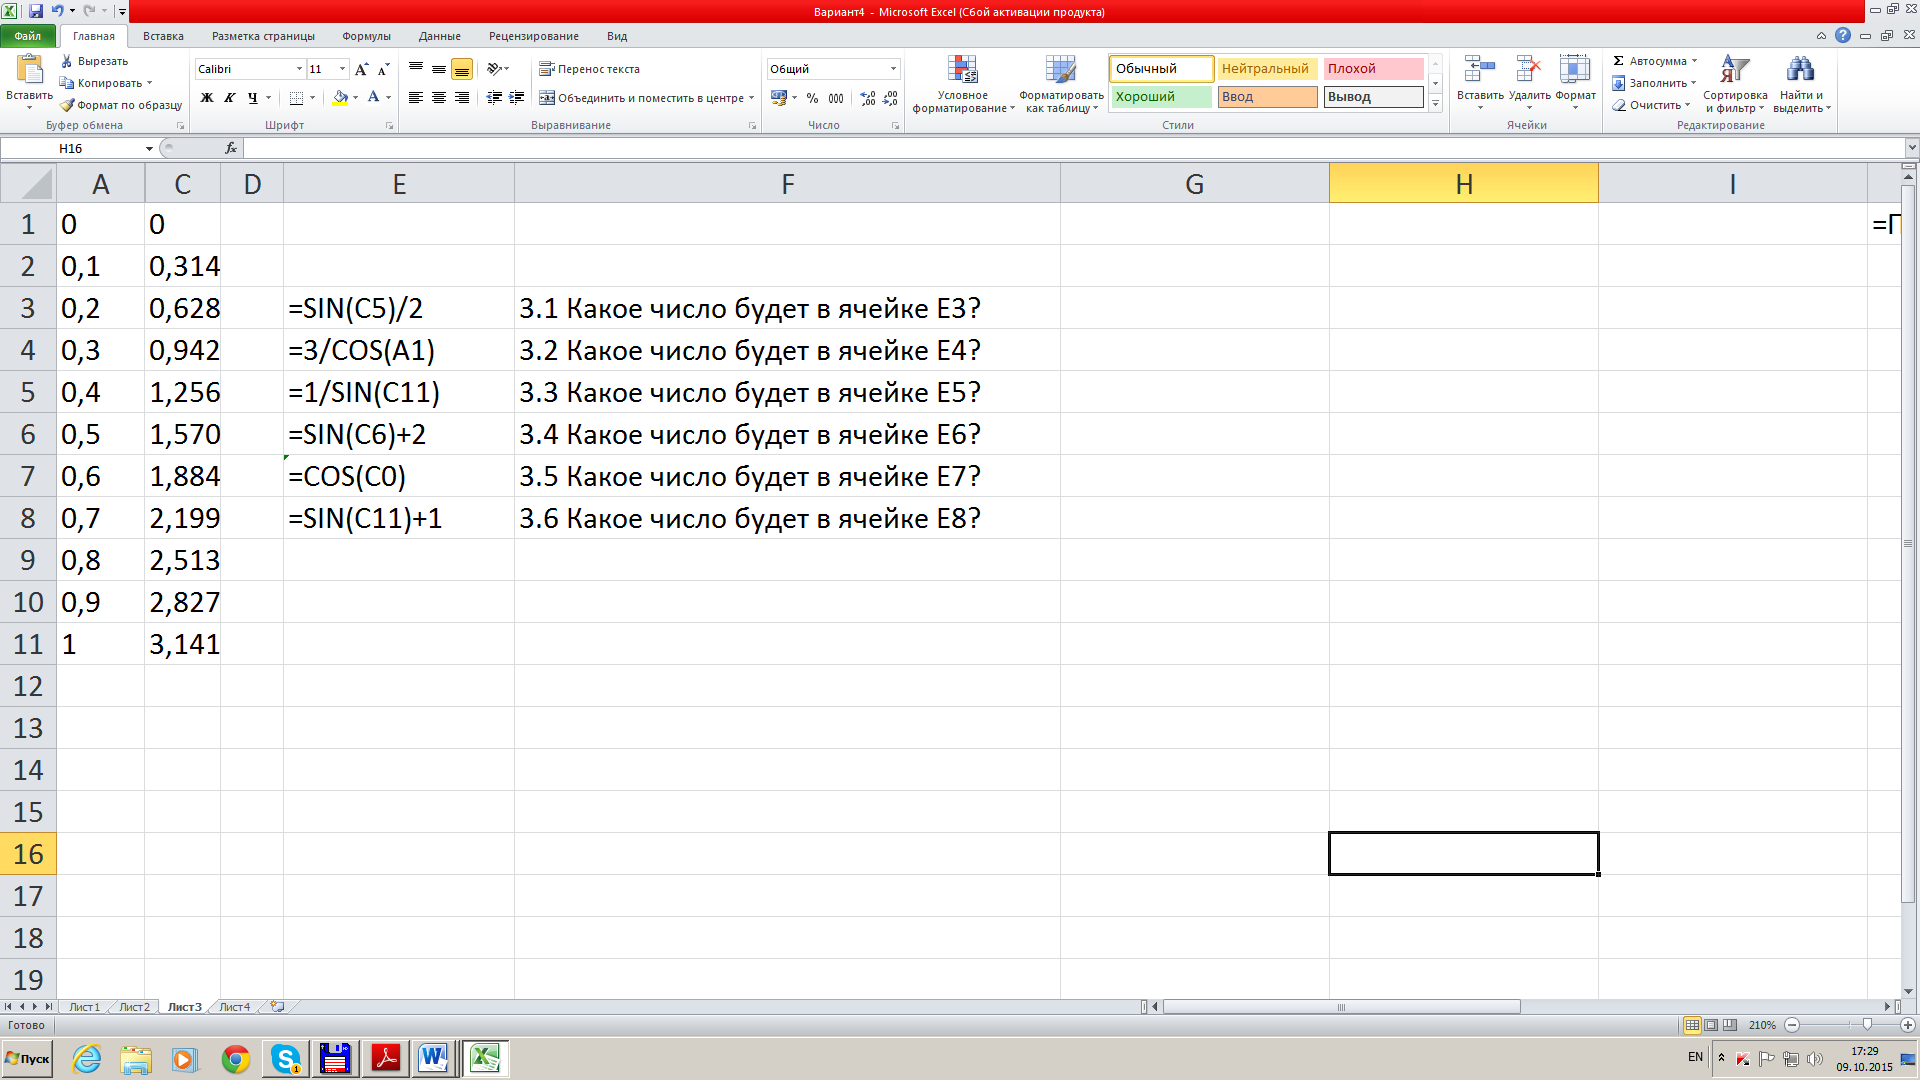 Тест по теме Использование адресных ссылок в Excel